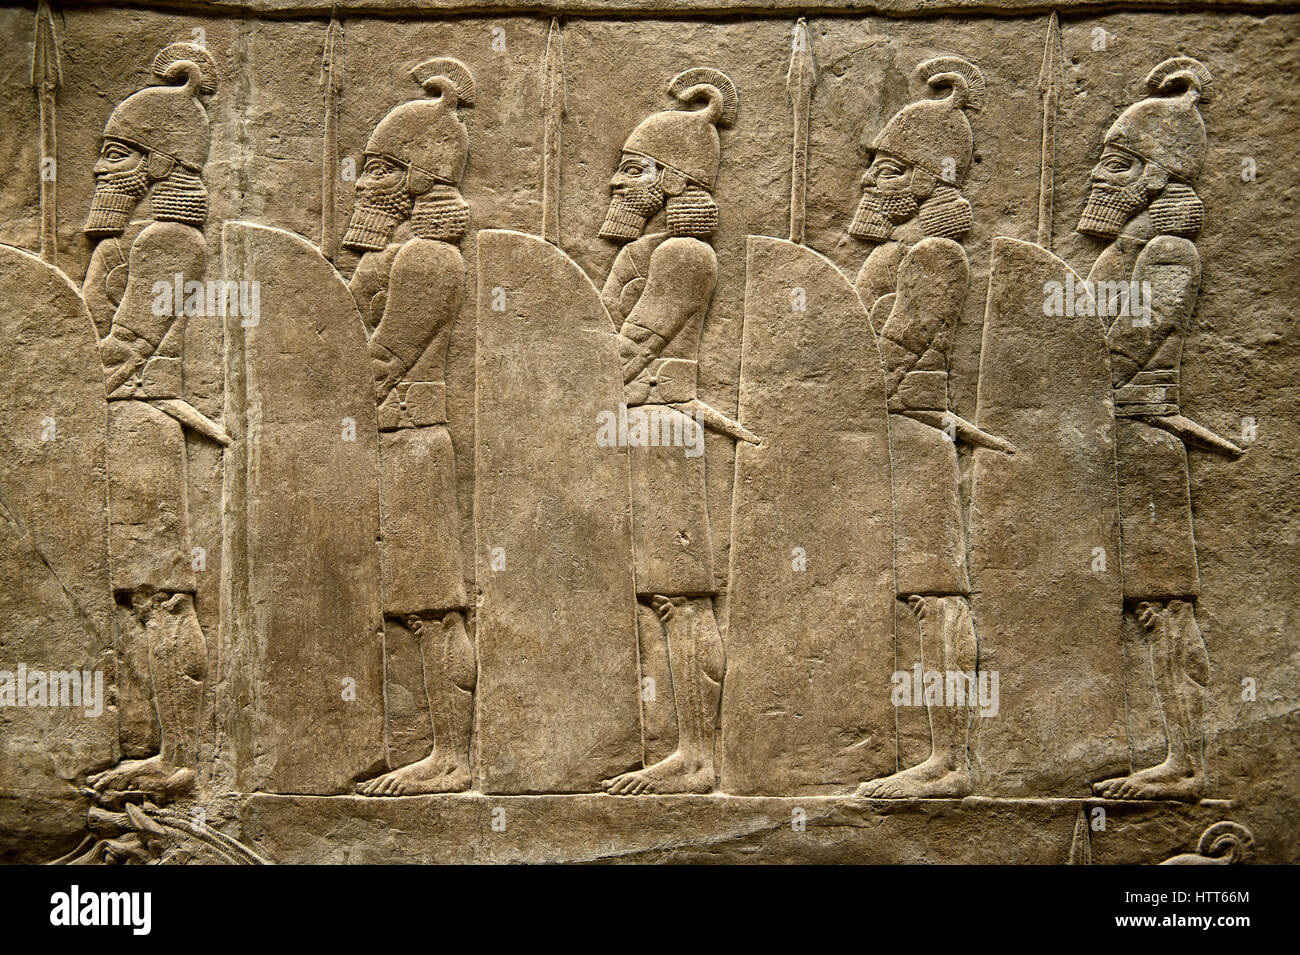 Rilievo assiro pannello di scultura di soldati che costeggiano la strada dal re Ashurnasirpal lion hunt. Da Ninive Palazzo Nord, Iraq, 668-627 A.C. B Foto Stock